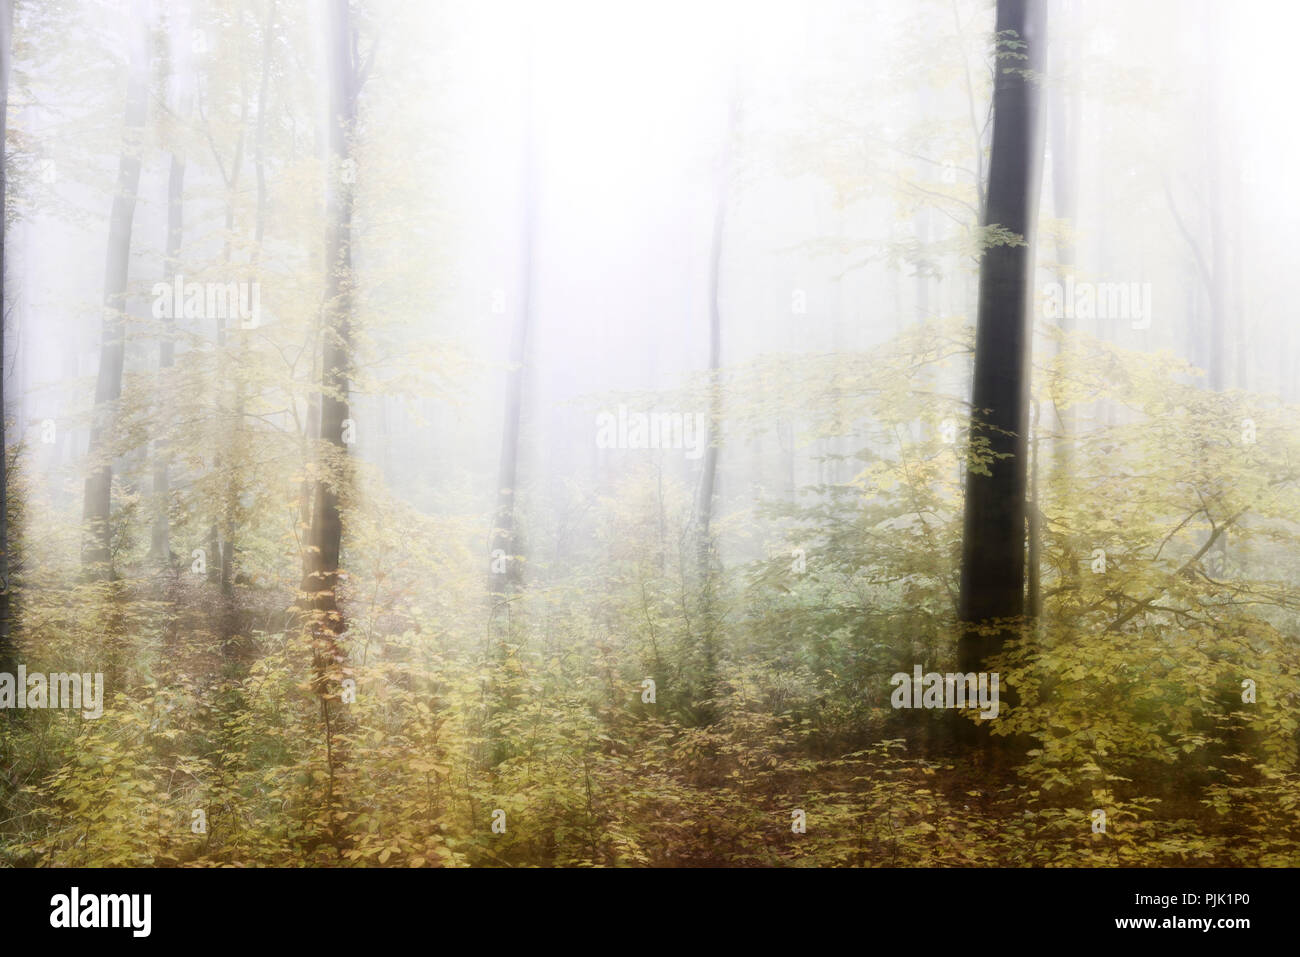 Foresta di nebbia in autunno, studio astratto, manomissione telecamera durante le riprese, il colore e il contrasto digital alterato, grana di pellicola visibile Foto Stock